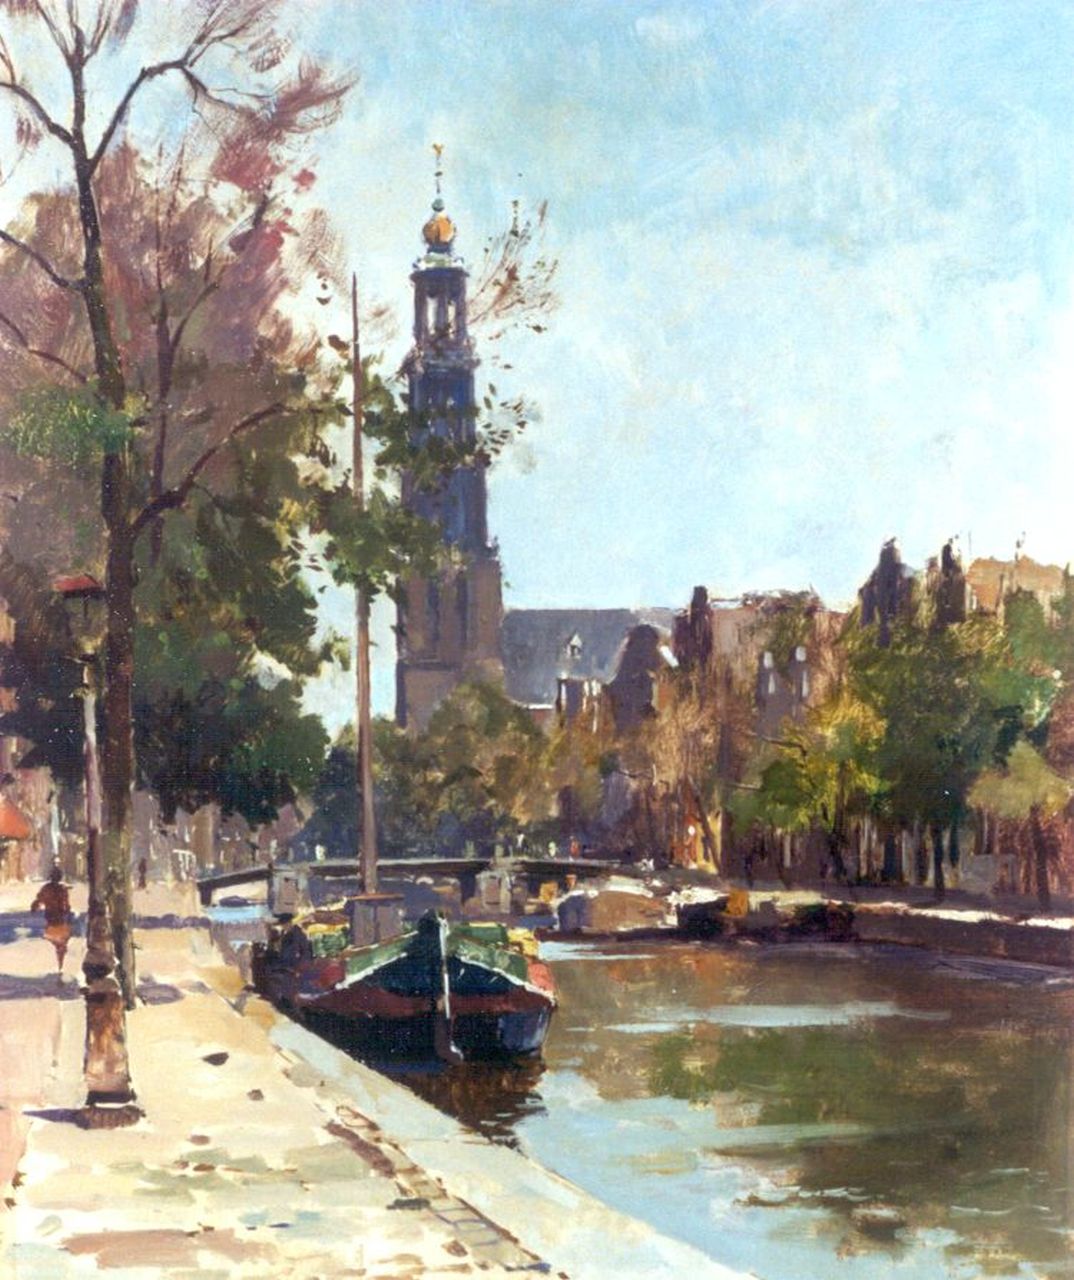 Ligtelijn E.J.  | Evert Jan Ligtelijn, Prinsengracht met de Westerkerk, Amsterdam; verso bauxietmijn, olieverf op paneel 49,6 x 40,0 cm, gesigneerd linksonder